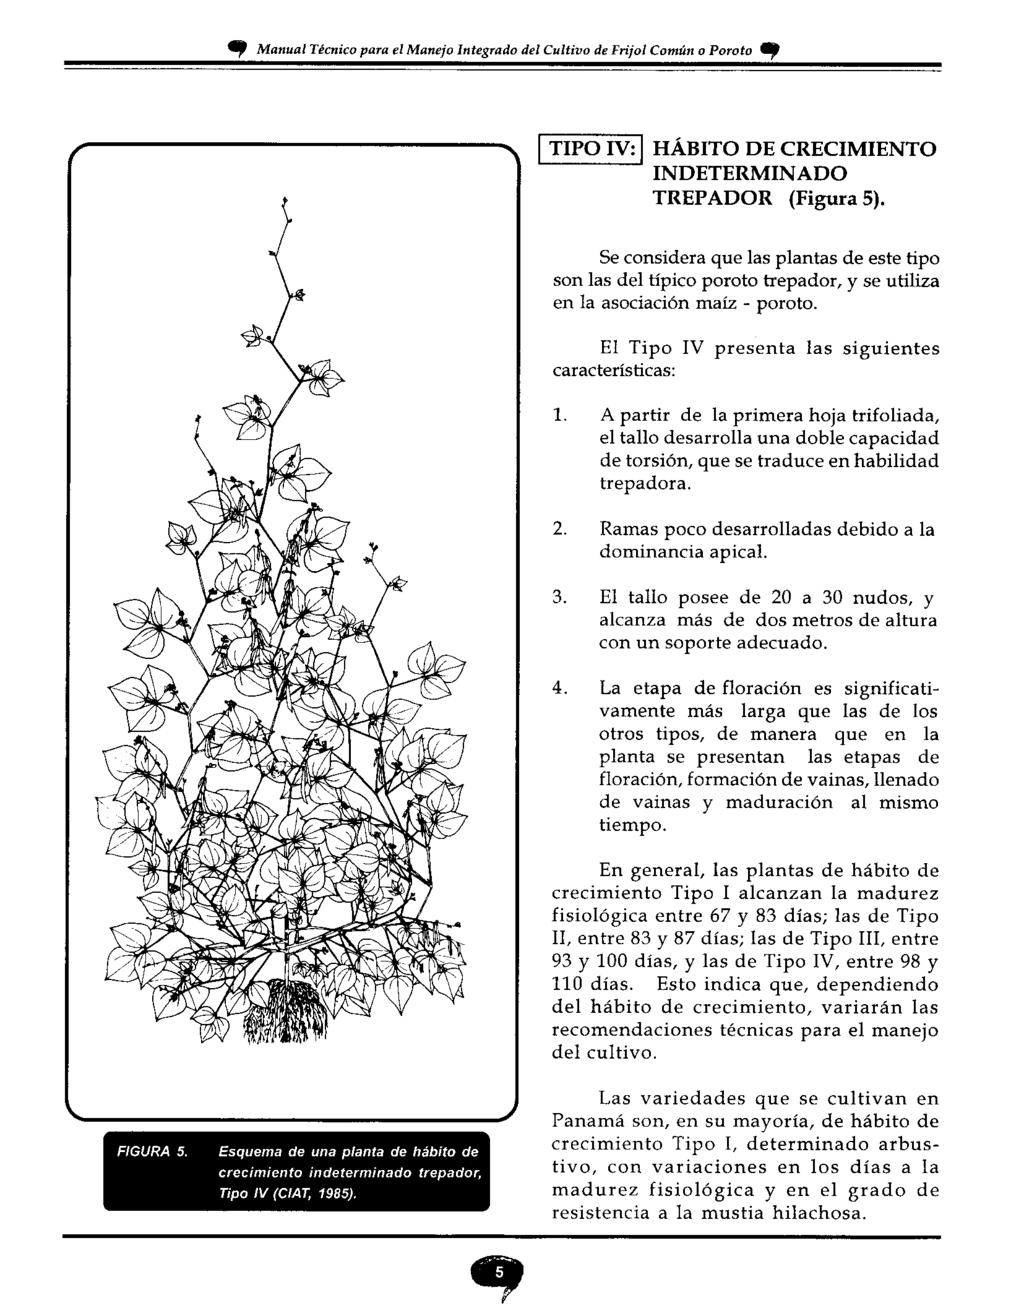 T Manual Técnico para el Manejo Integrado del Cultivo de Frijol Común o Poroto Cp TIPO IV: HABITO DE CRECIMIENTO INDETERMINADO TREPADOR (Figura 5).